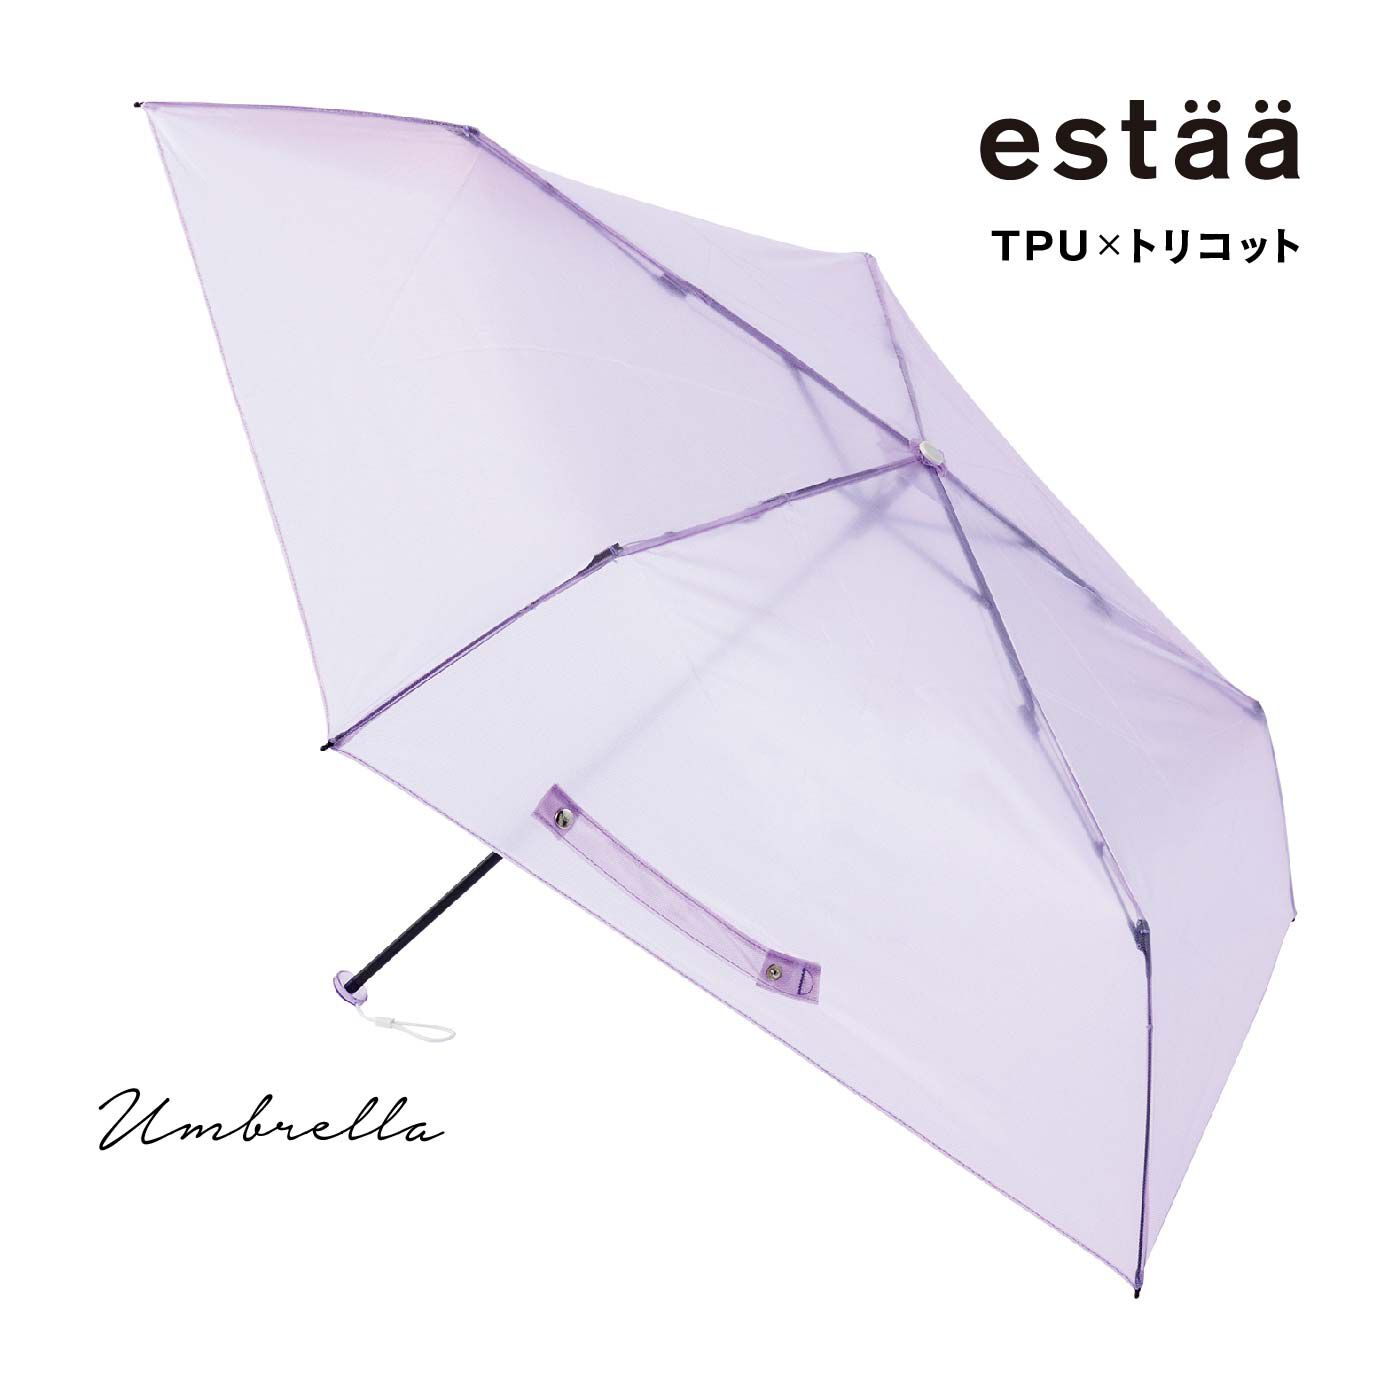 FELISSIMO PARTNERS|ネオンカラーの透け感がおしゃれな軽量折りたたみ傘